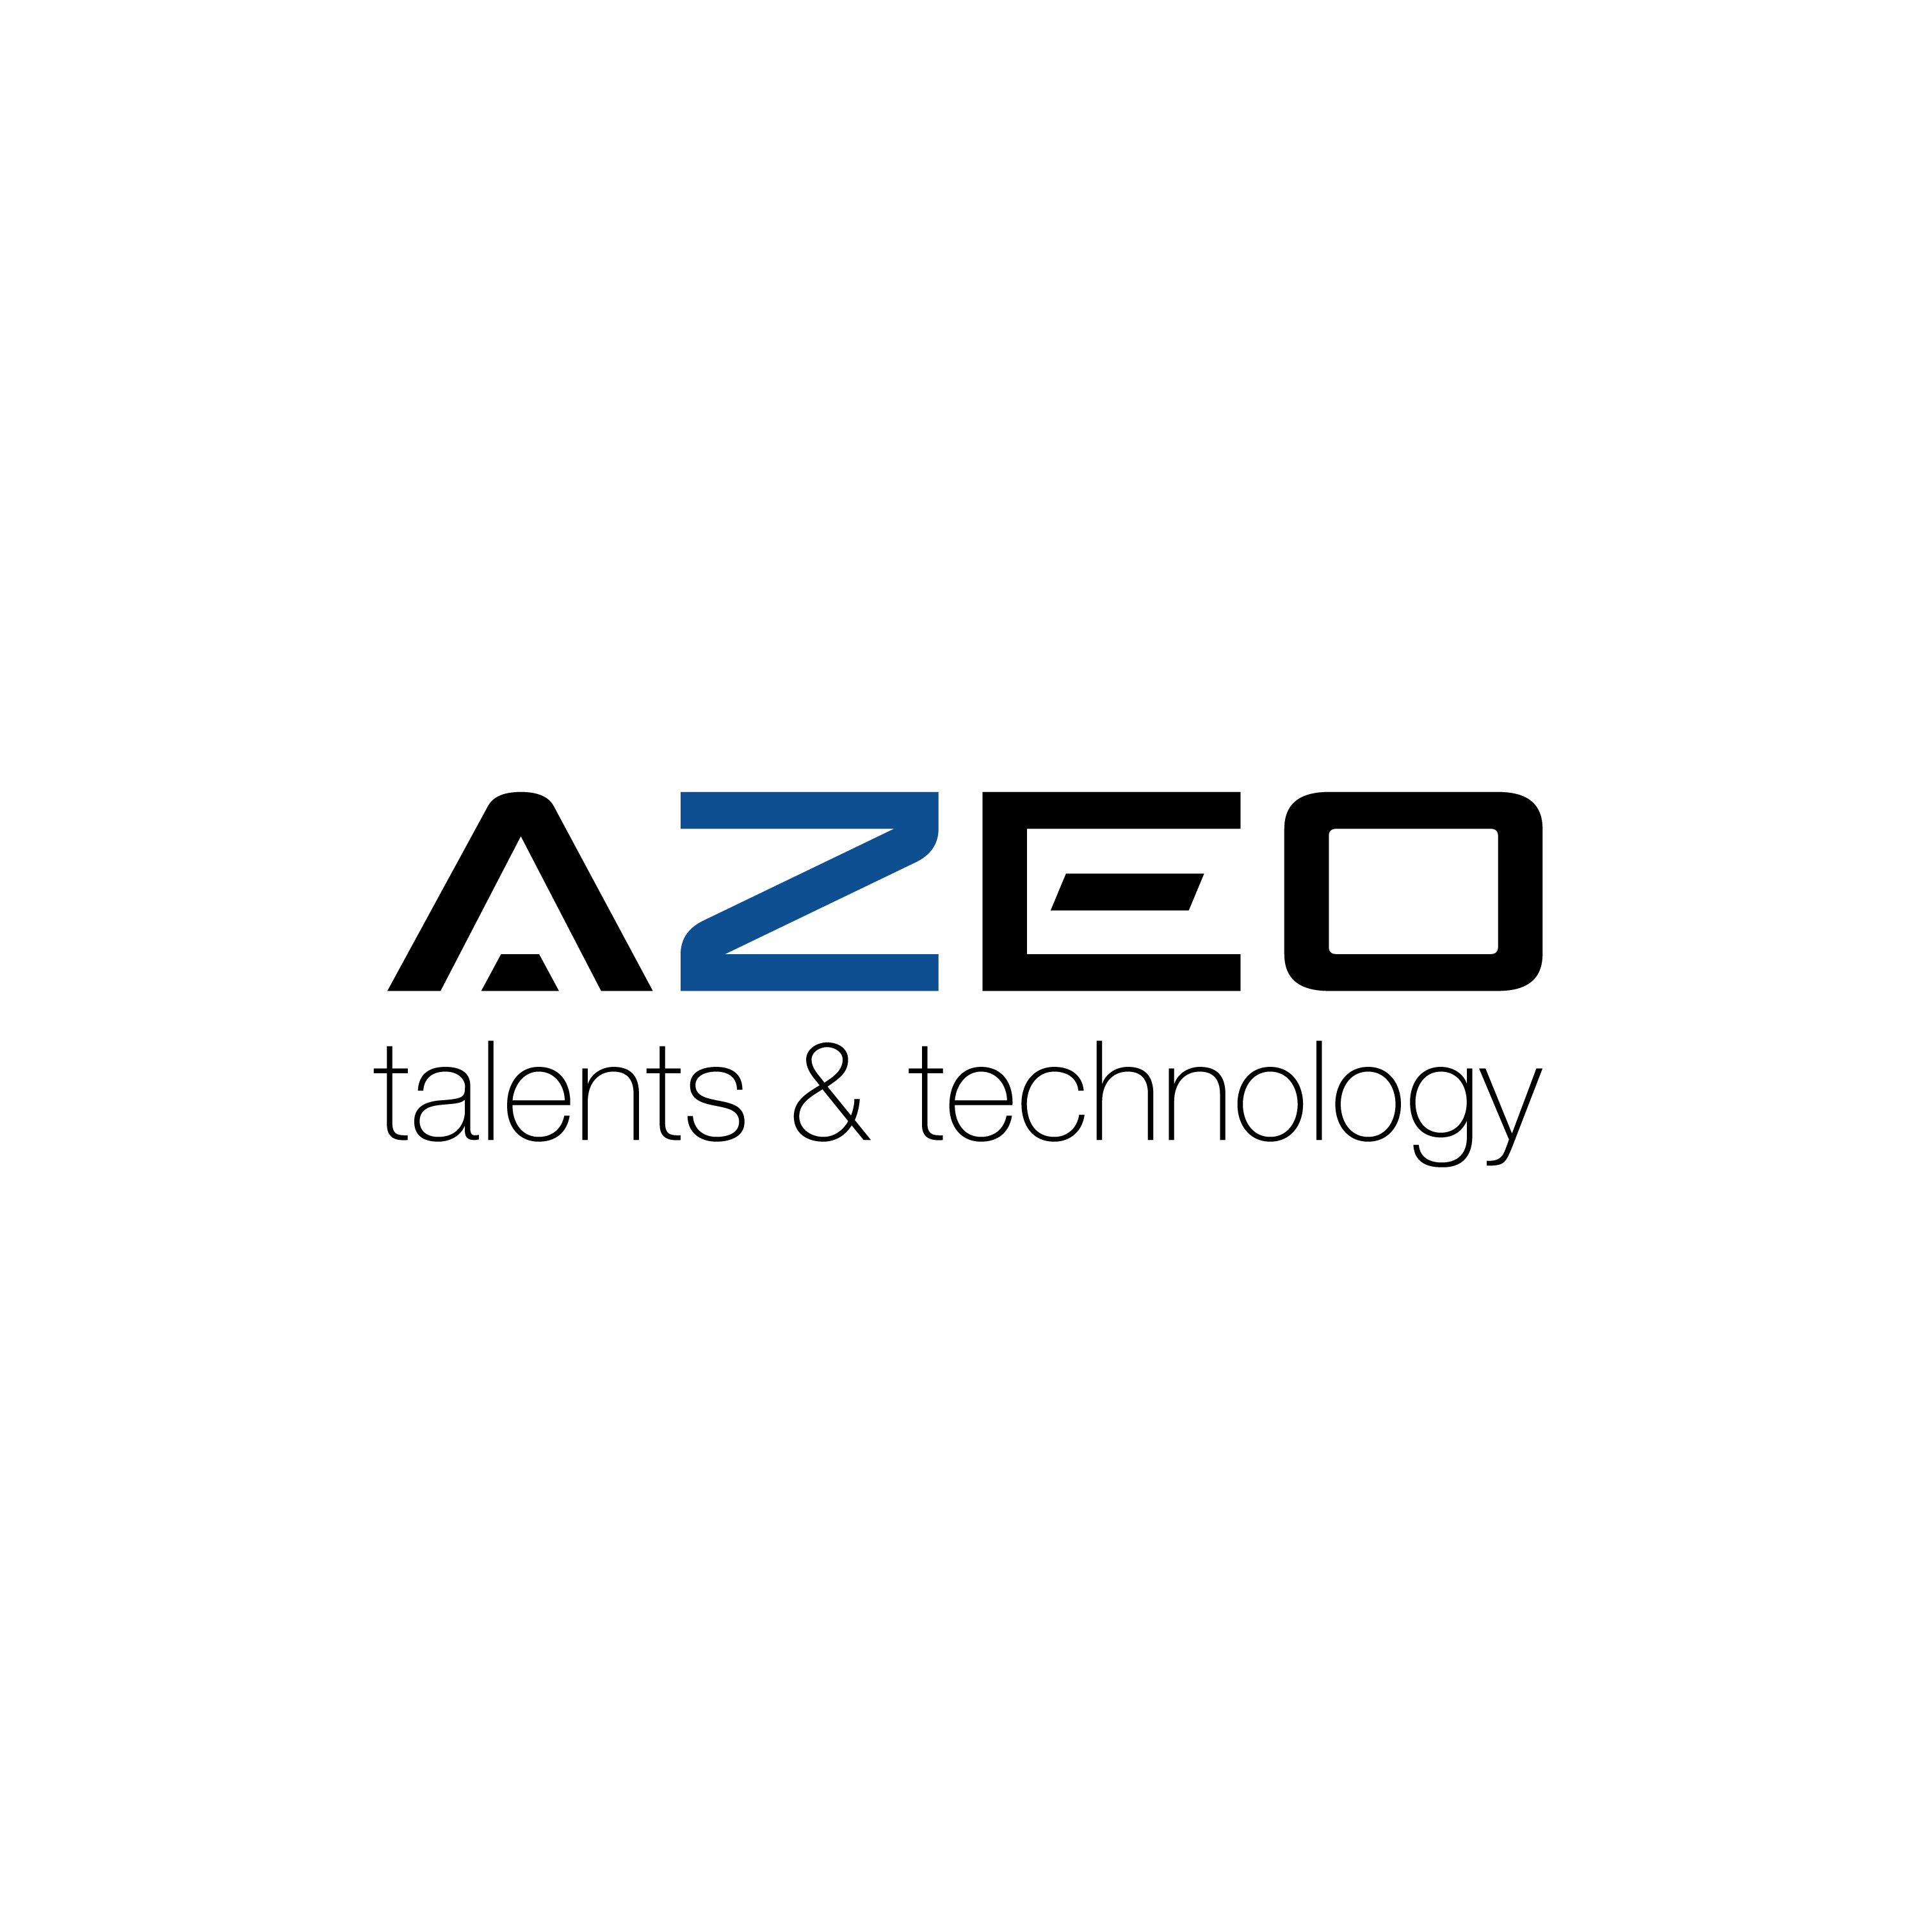 Logo Azeo